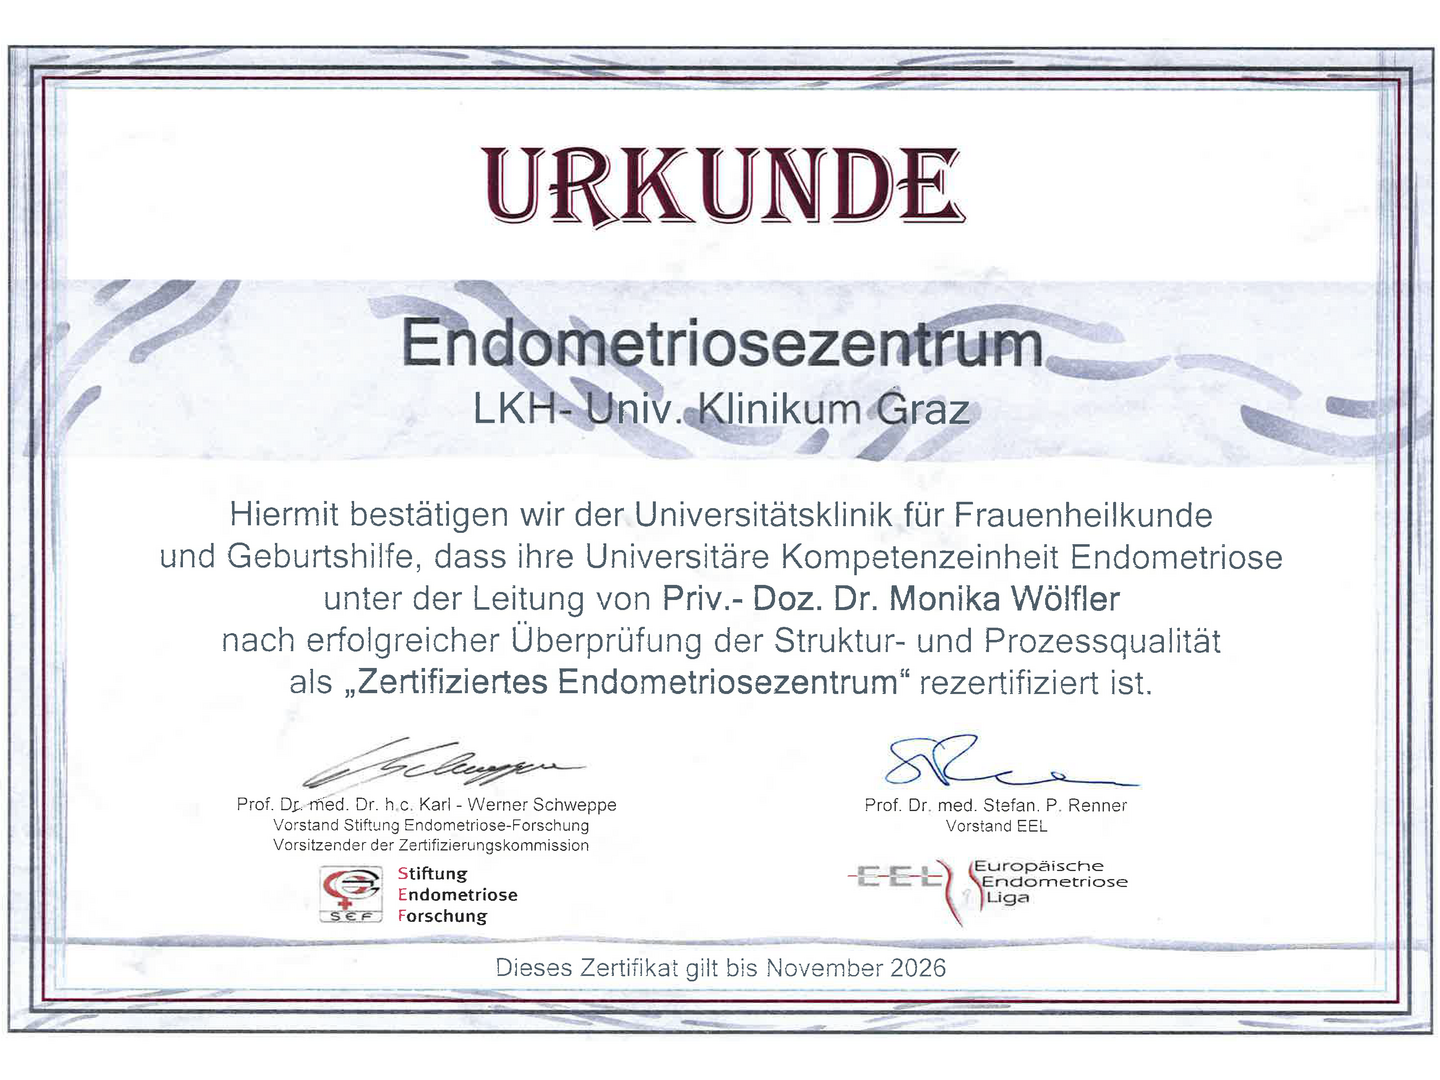 Für unsere Zuweiser - LKH-Univ. Klinikum Graz